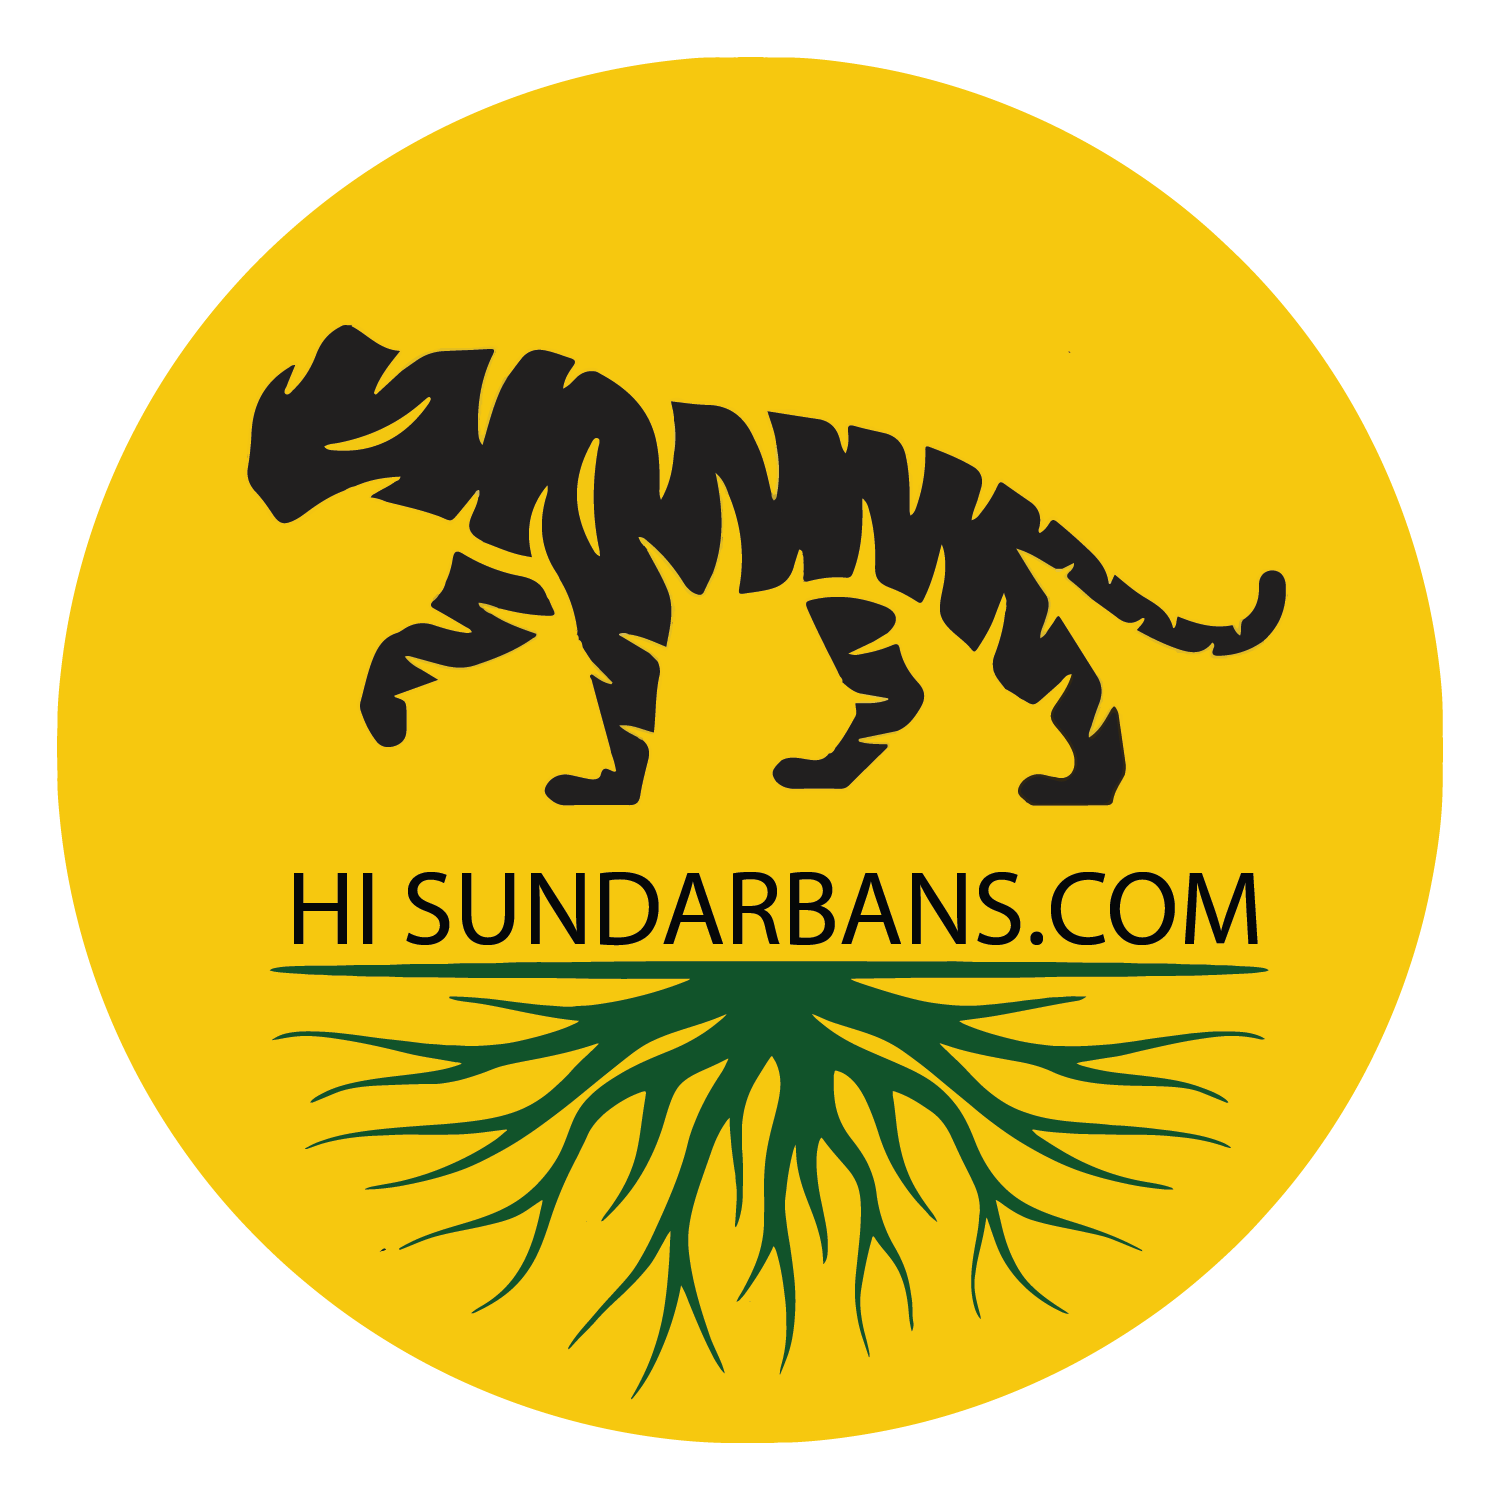 Hi Sundarbans